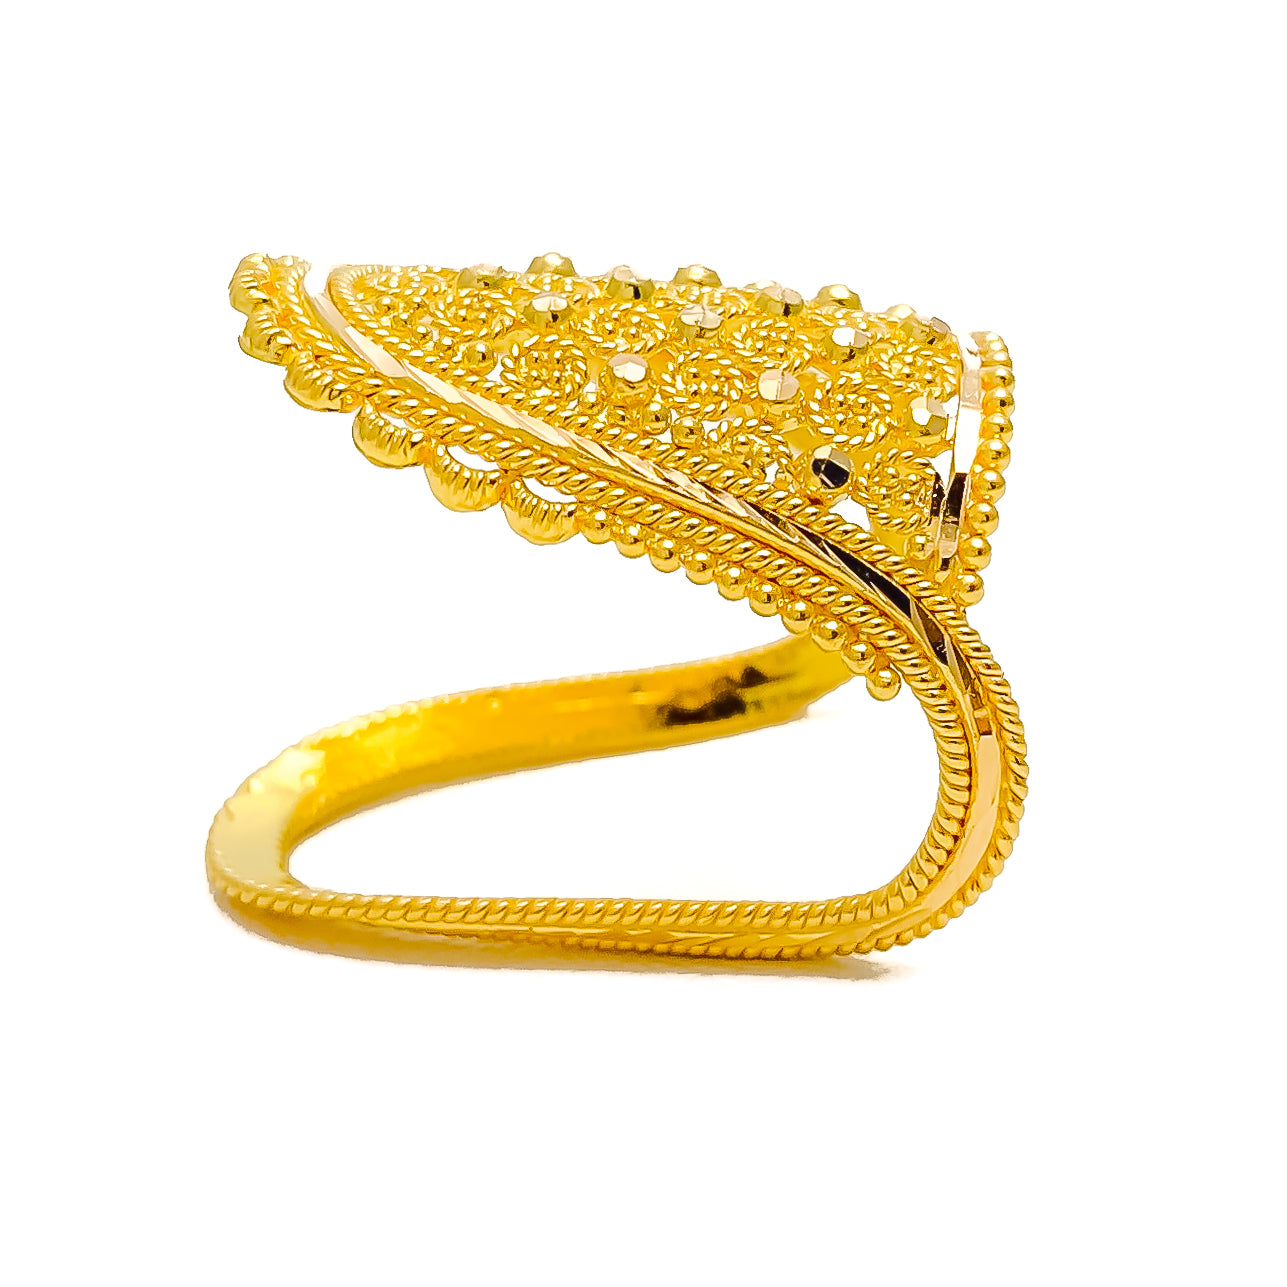 22K Gold Vanki Ring With Cz & Color Stones - 235-GVR356 in 4.400 Grams